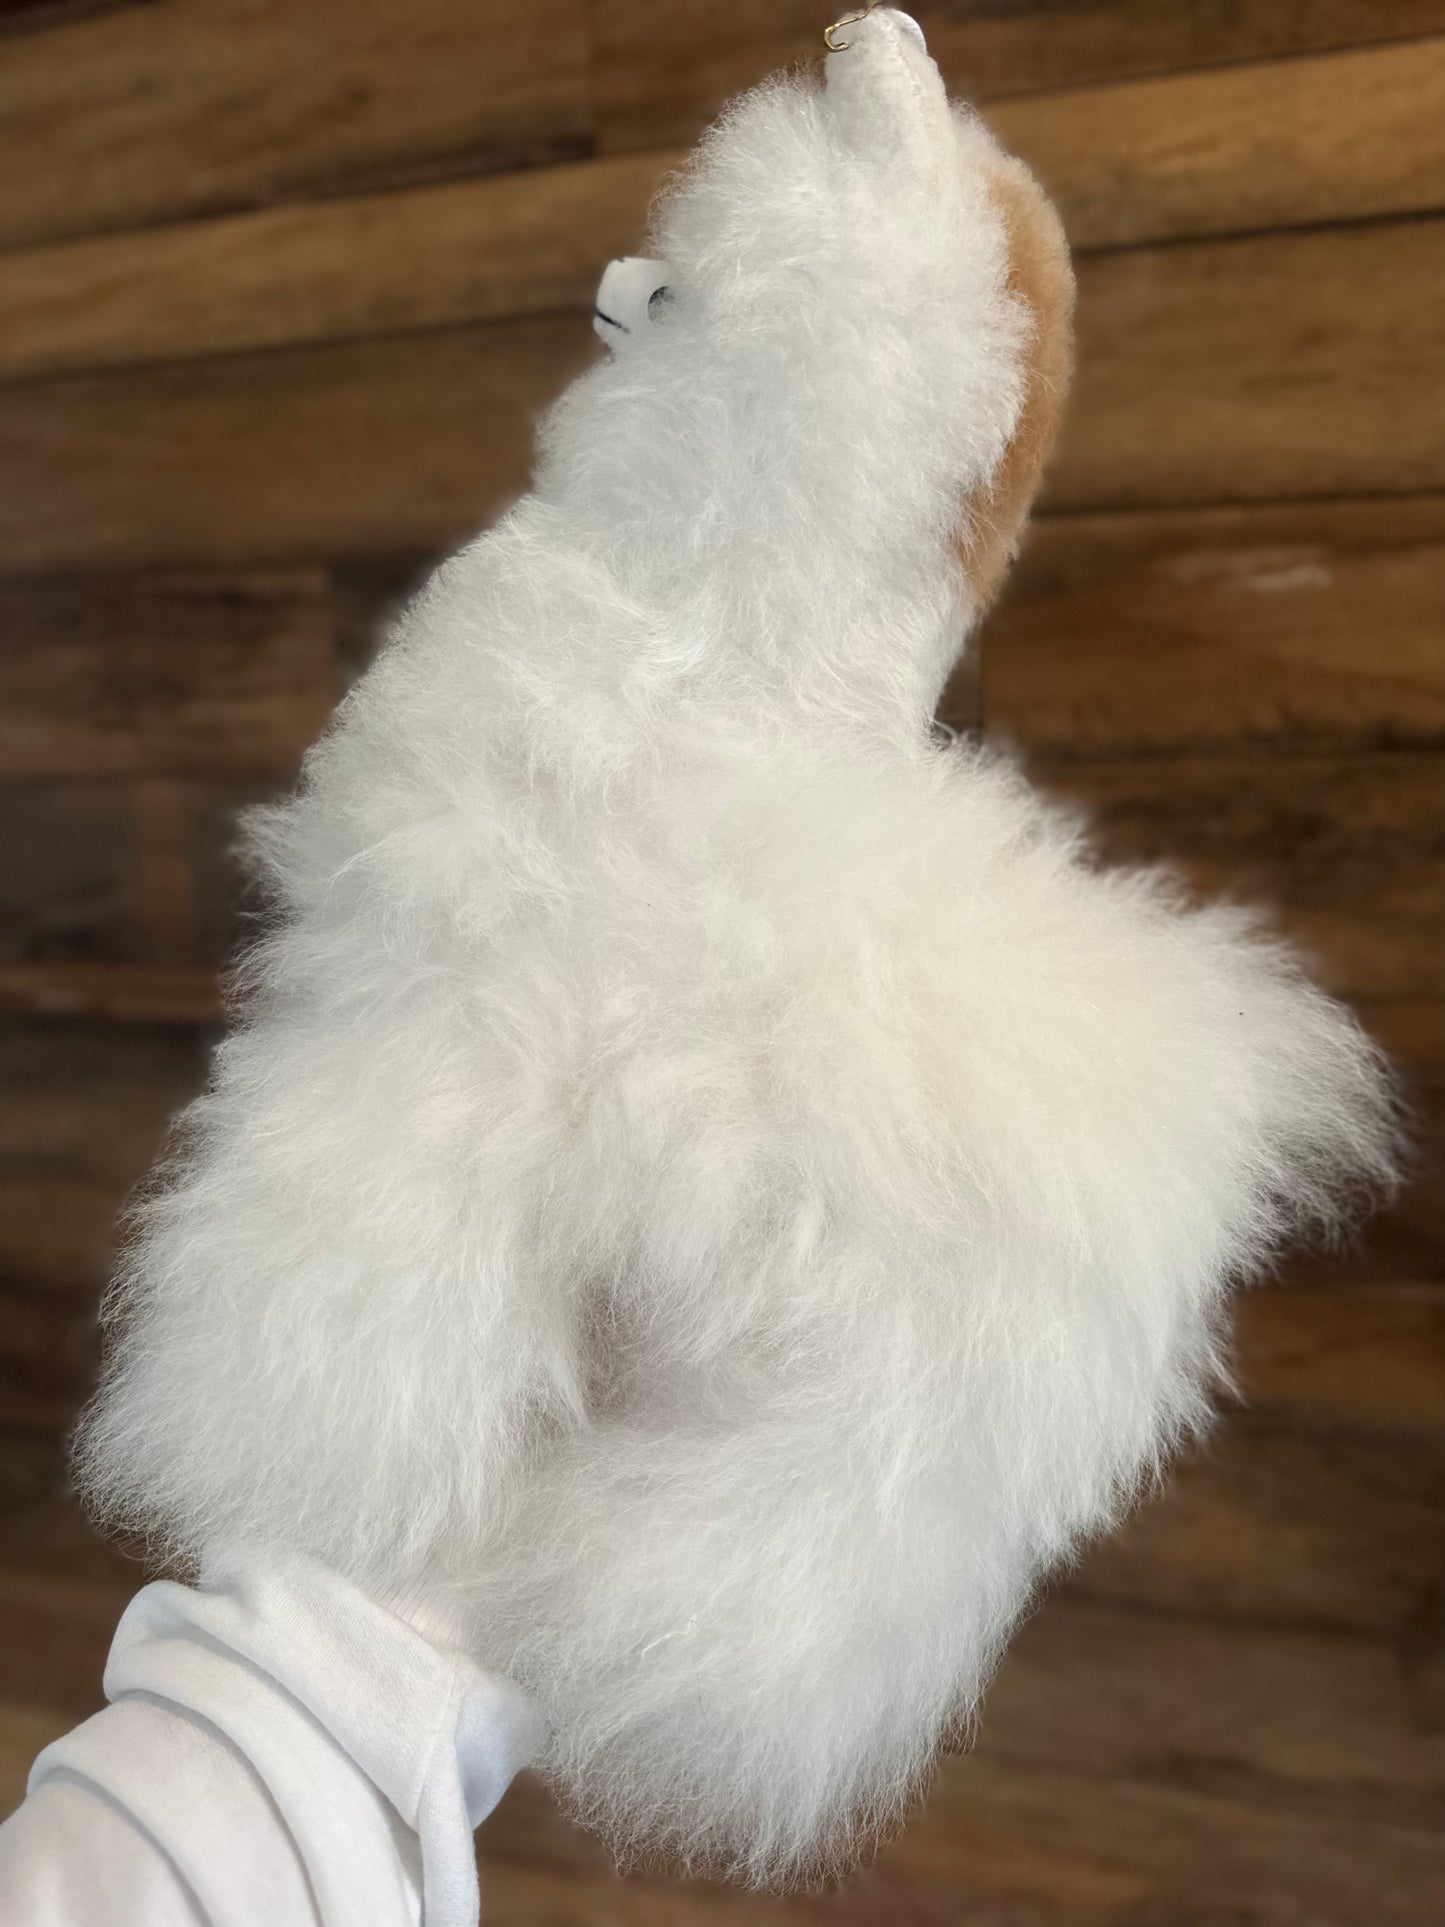 Alpaca - Alpaca Fiber Stuffed Animal